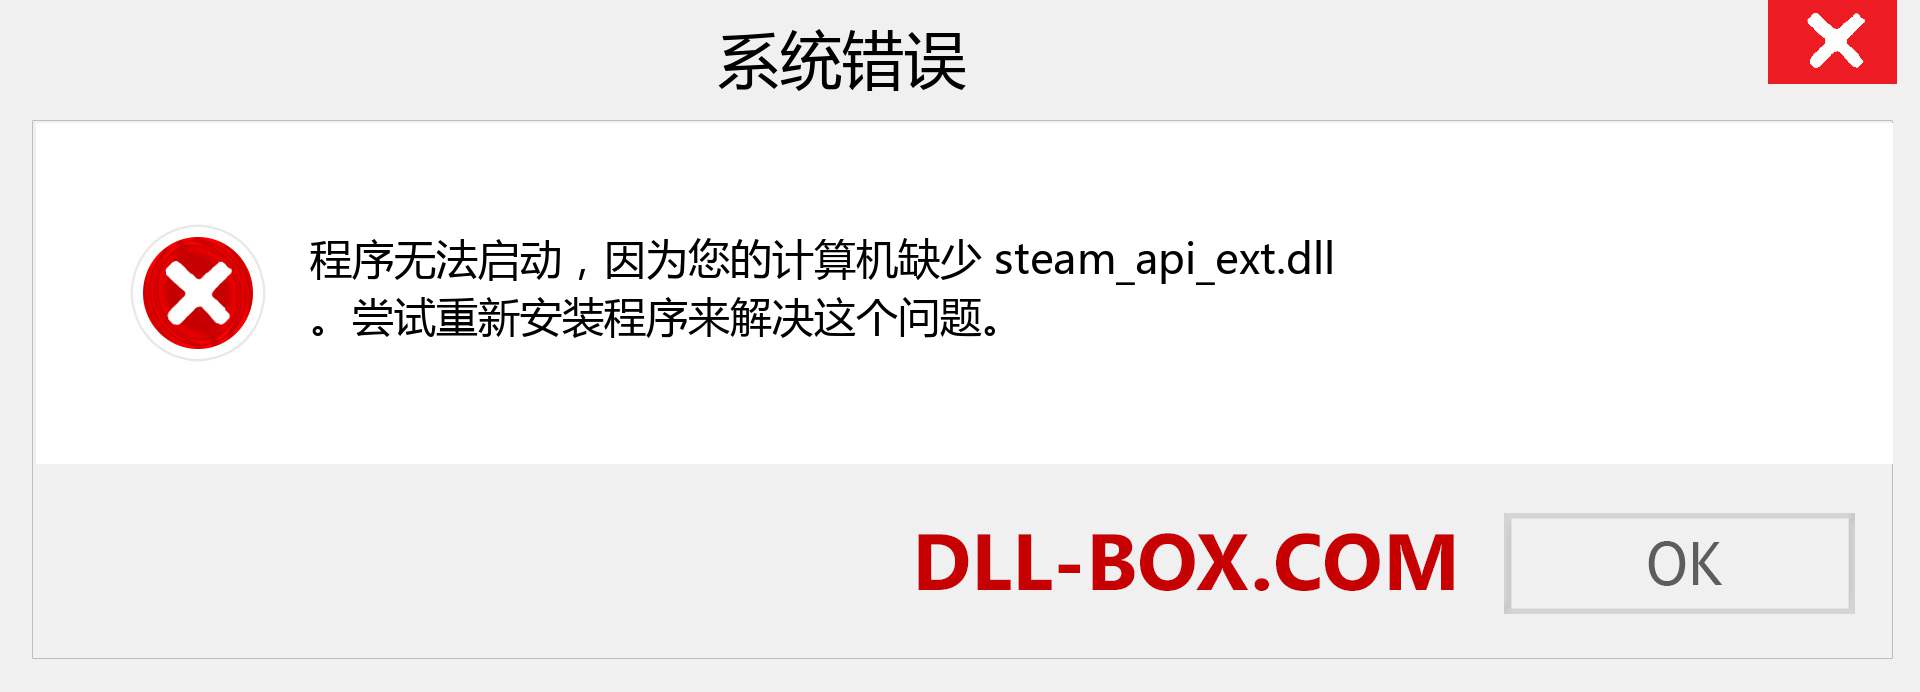 steam_api_ext.dll 文件丢失？。 适用于 Windows 7、8、10 的下载 - 修复 Windows、照片、图像上的 steam_api_ext dll 丢失错误